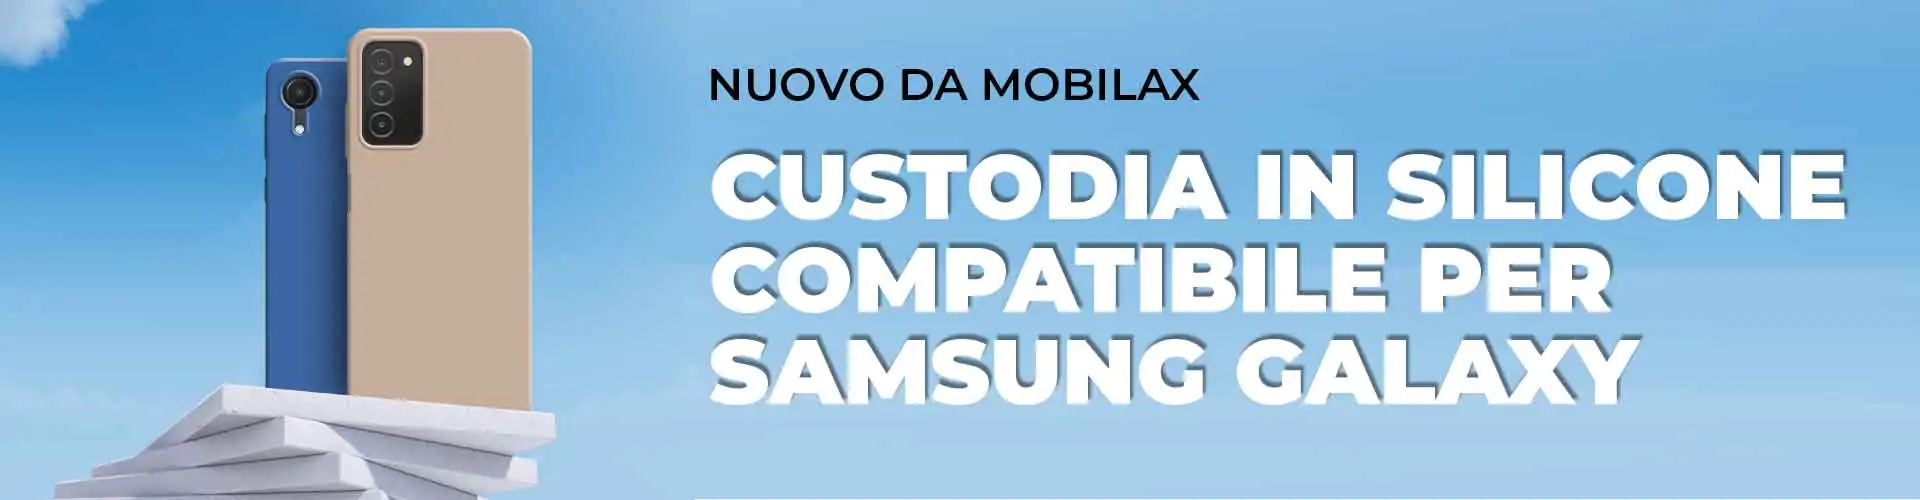 Custodia in silicone compatibile per Samsung Galaxy